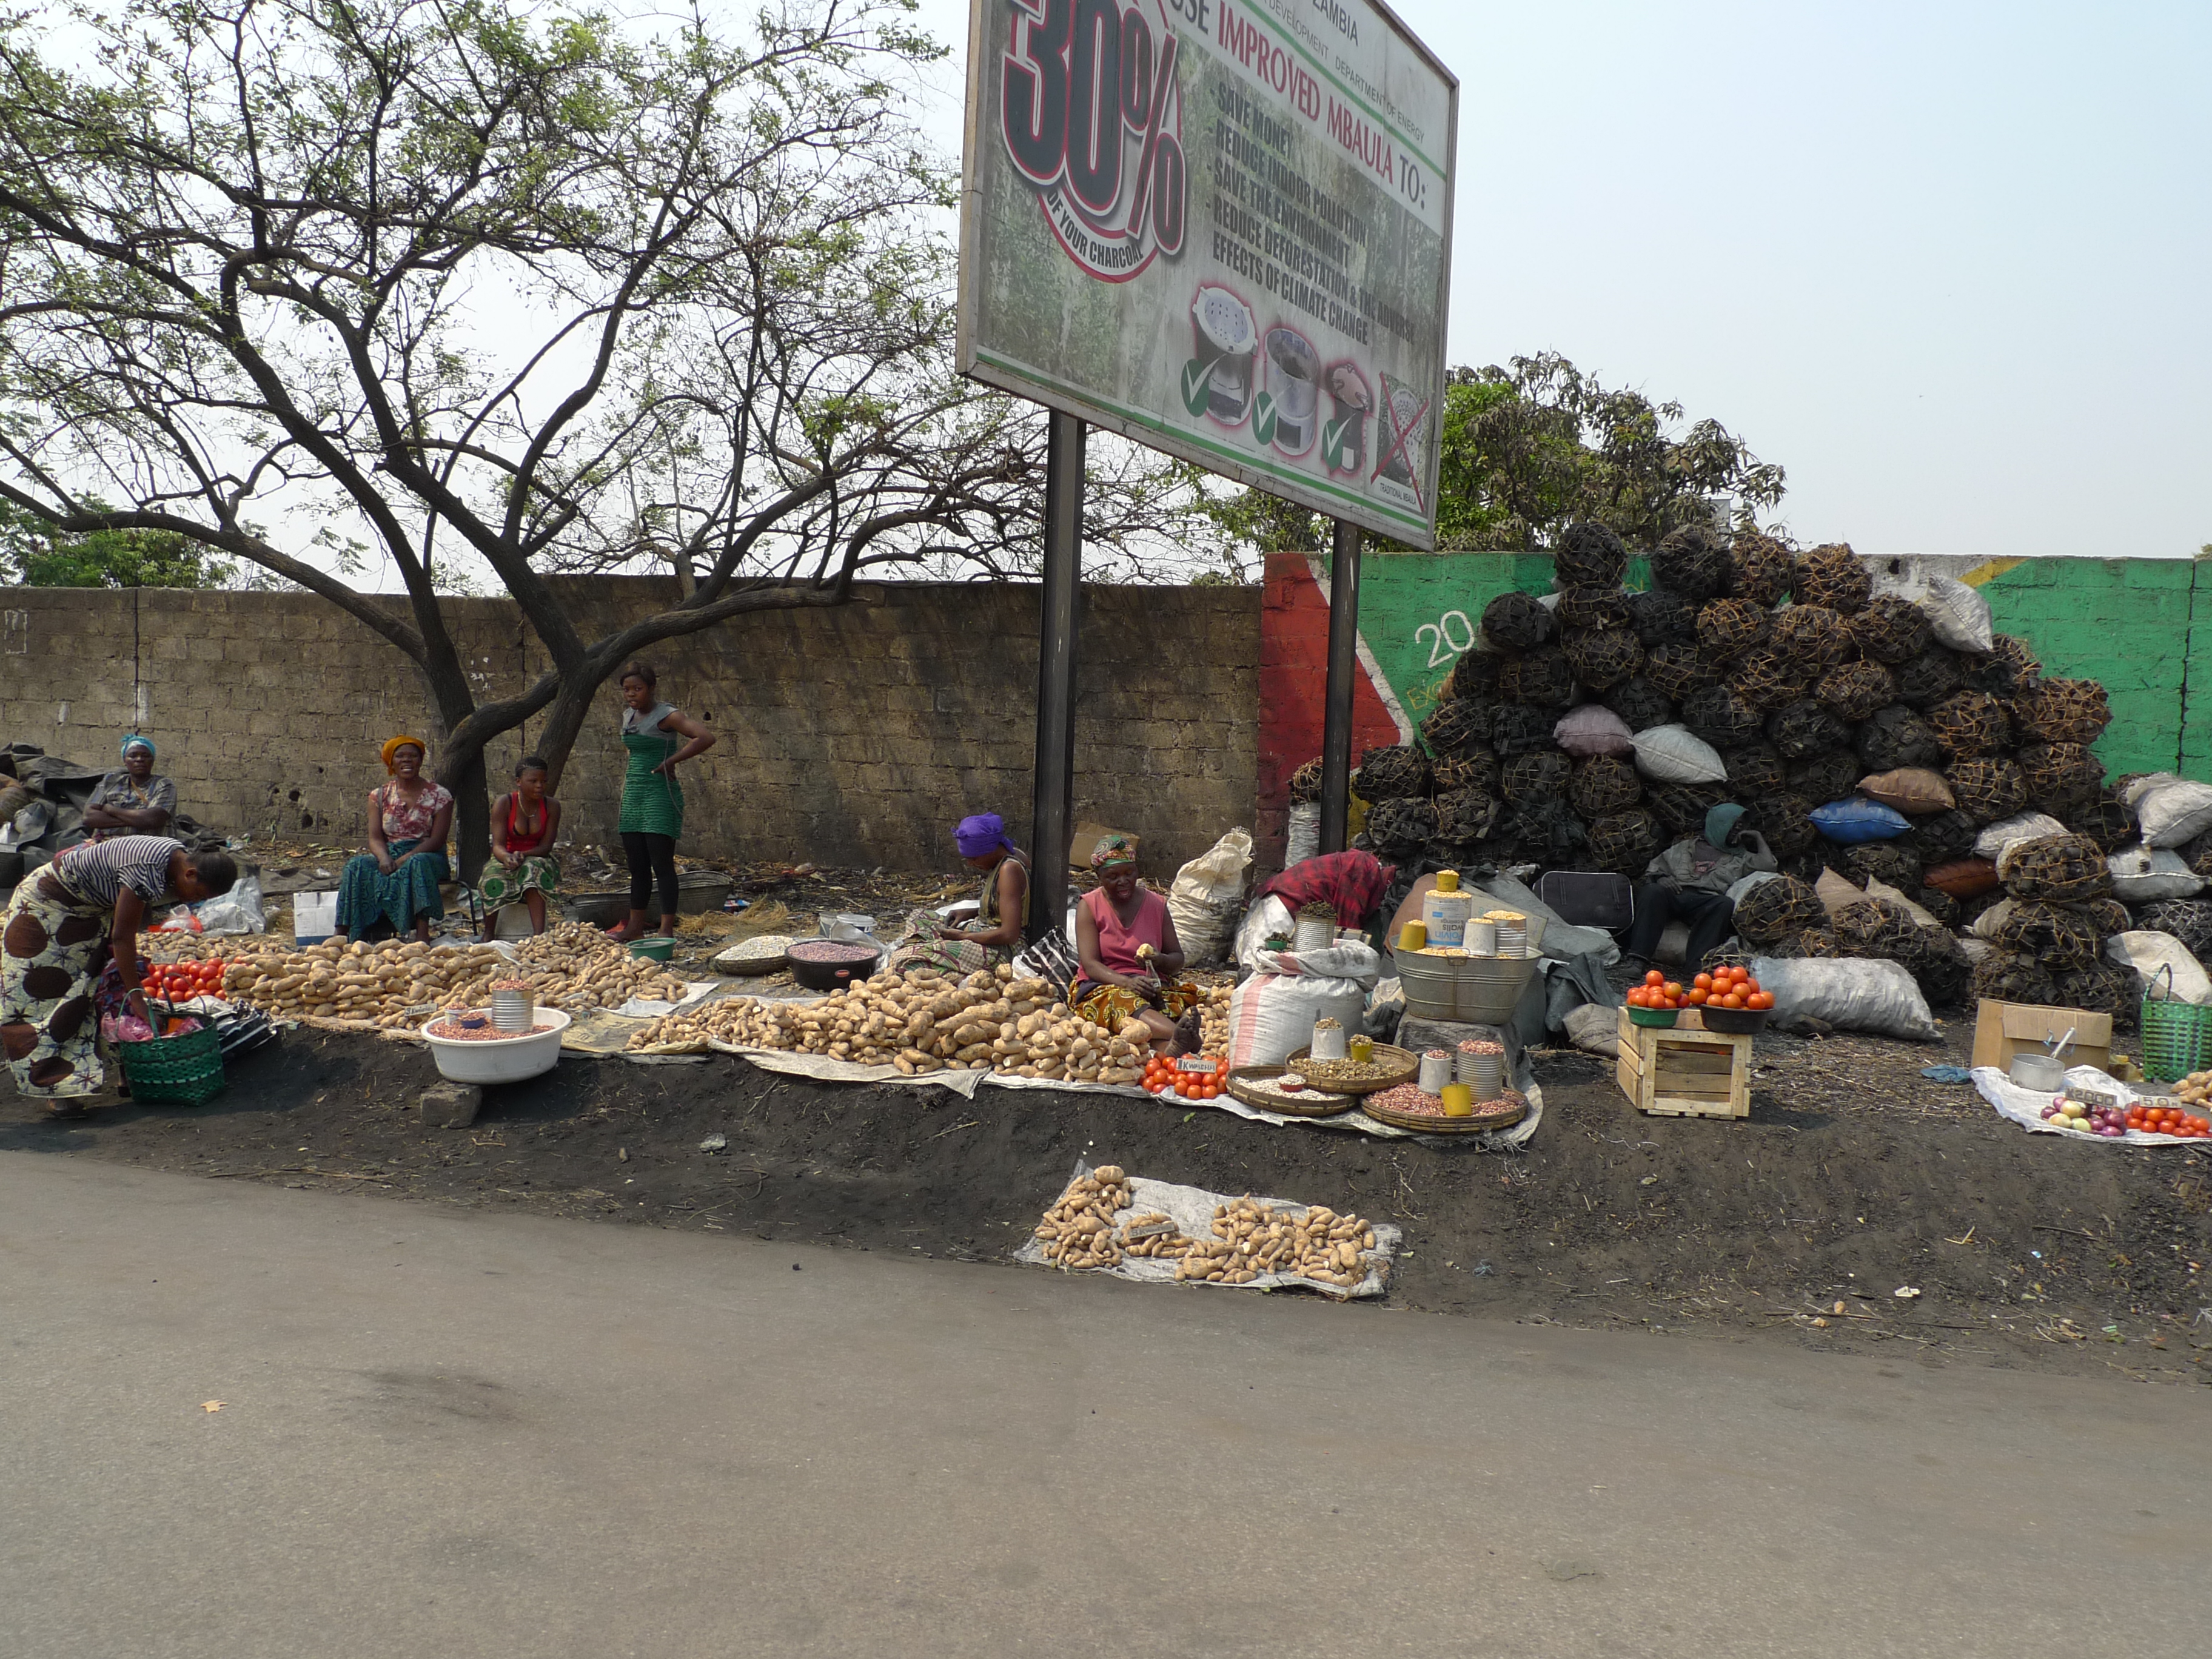 Straßenhändlerinnen in Sambia: Das Land versucht mit Hilfe der G20 und des IWF aus der Überschuldung zu kommen.